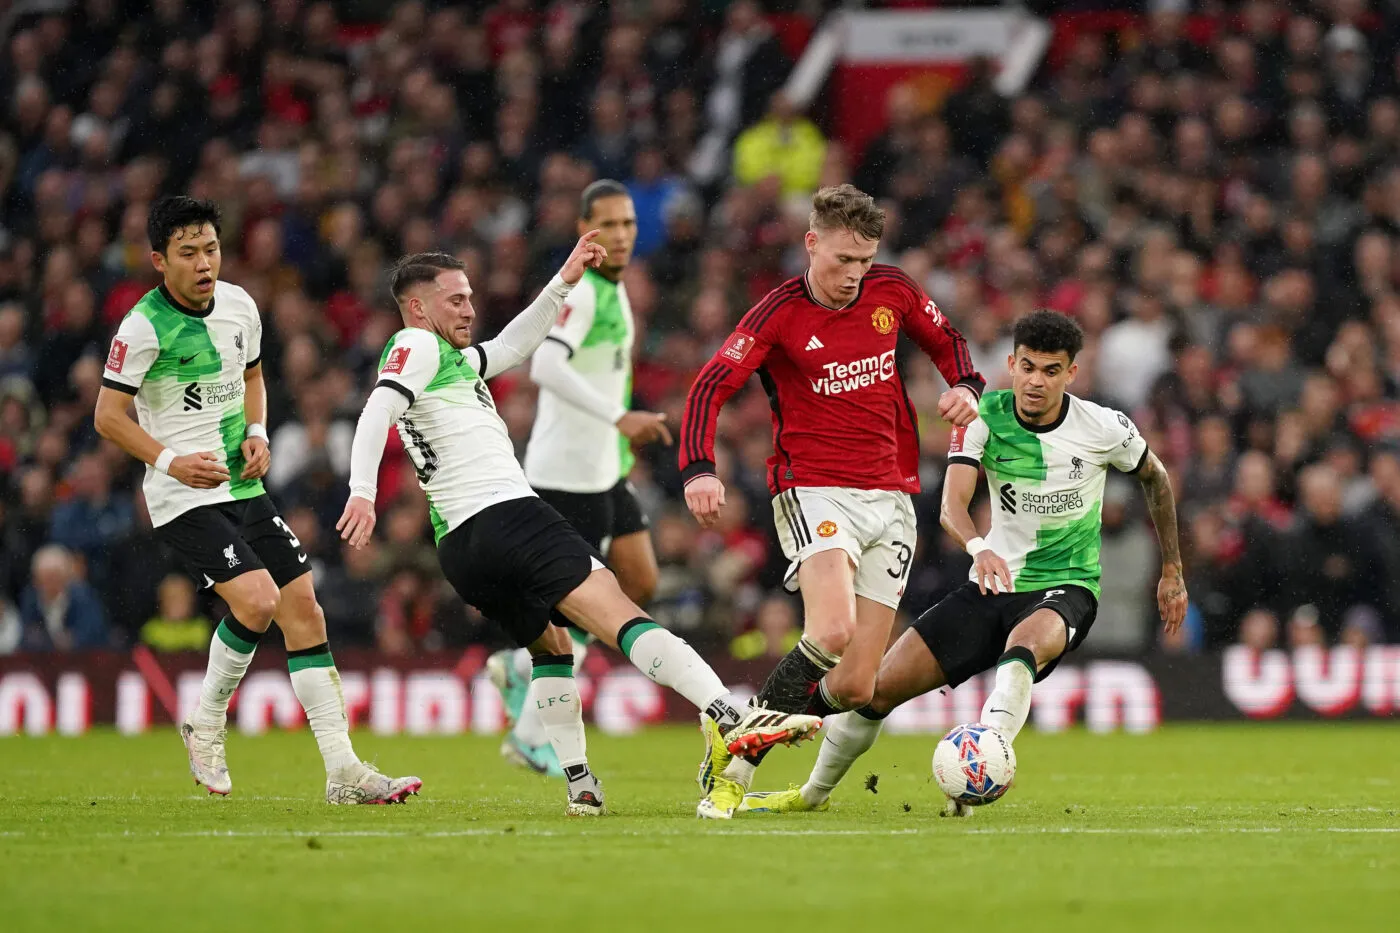 Liverpool et Manchester United s’unissent pour sensibiliser aux drames comme Hillsborough